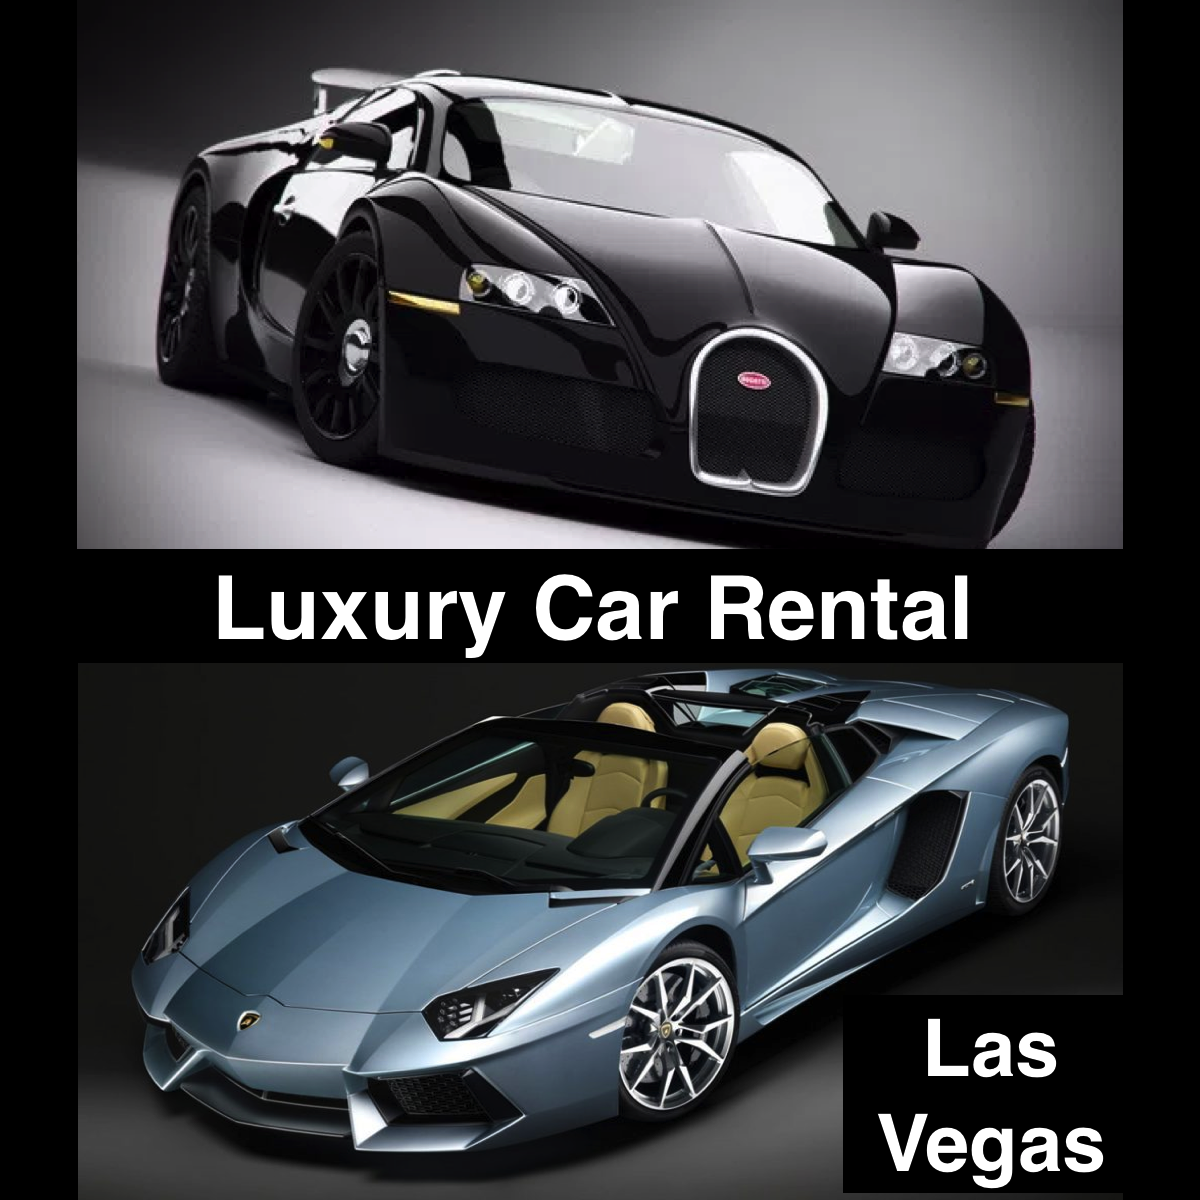 Luxury Car Rental Las Vegas Exotic Cars | All Best Top 10 Reviews